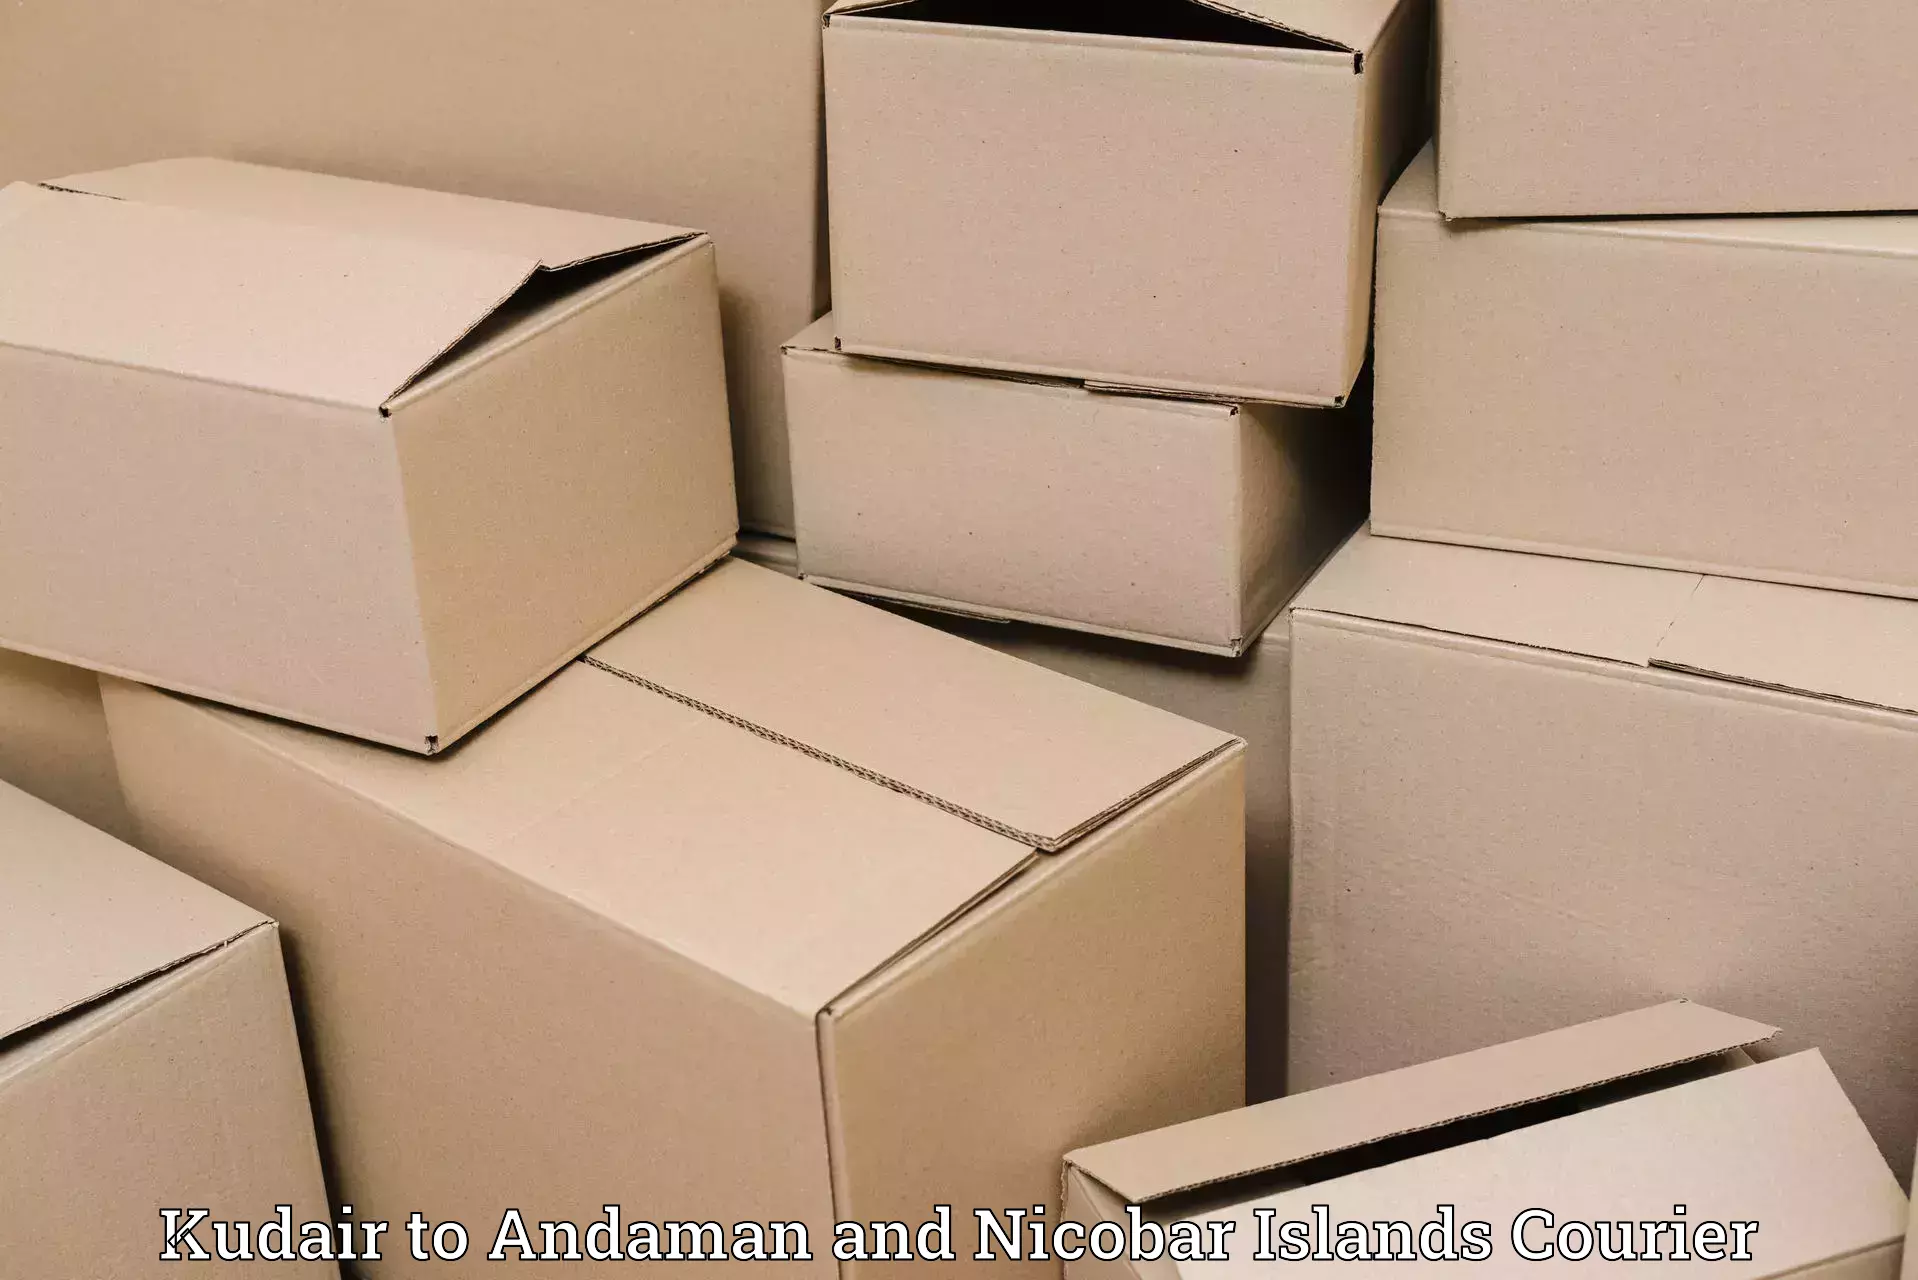 E-commerce shipping partnerships Kudair to Andaman and Nicobar Islands